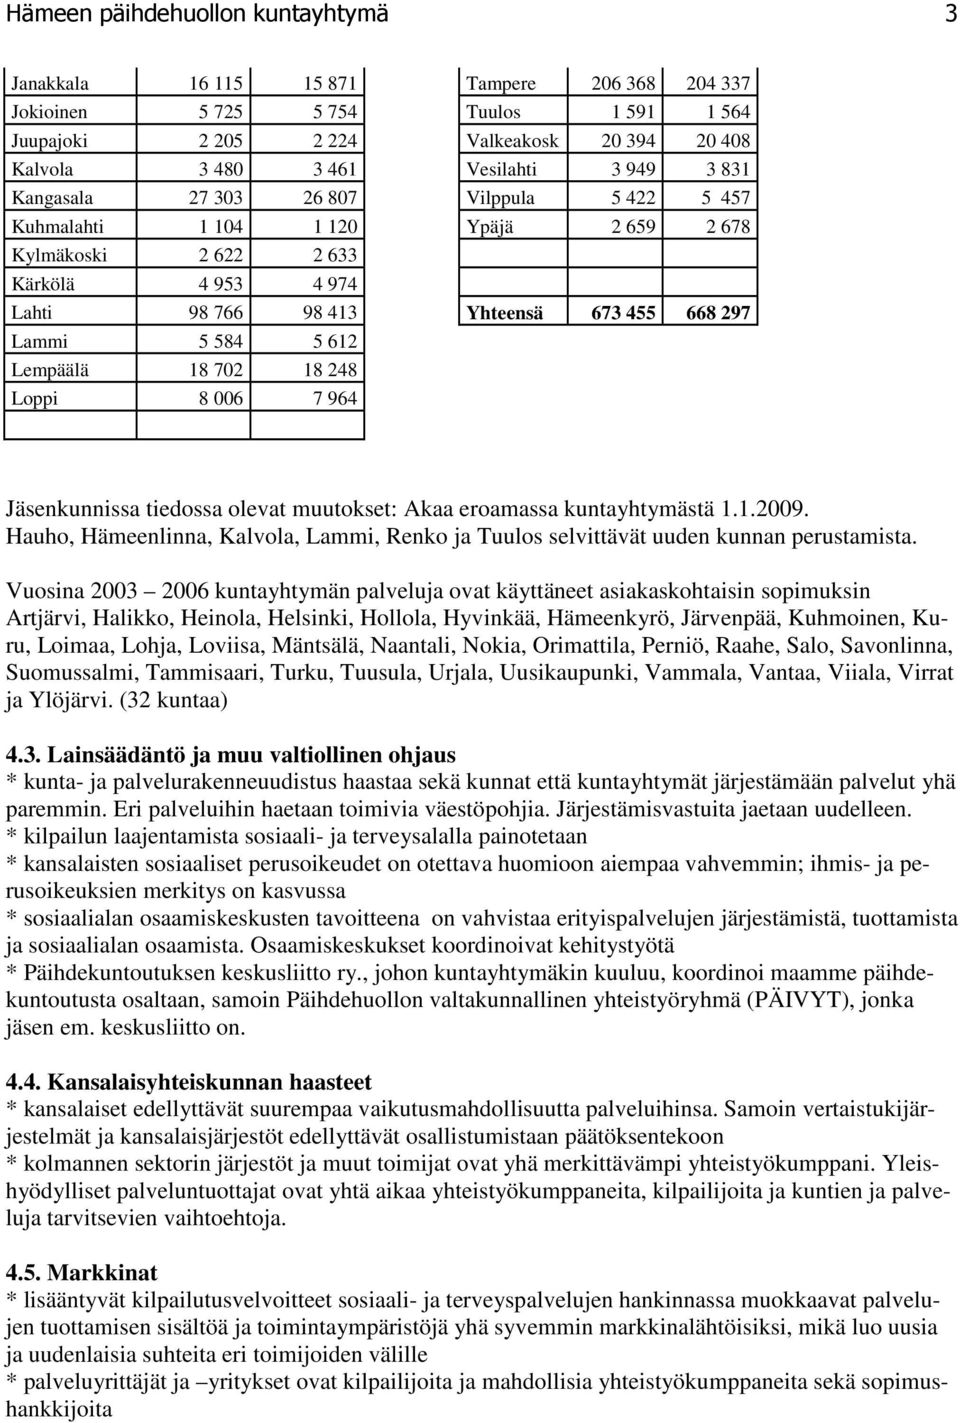 Lammi 5 584 5 612 Lempäälä 18 702 18 248 Loppi 8 006 7 964 Jäsenkunnissa tiedossa olevat muutokset: Akaa eroamassa kuntayhtymästä 1.1.2009.